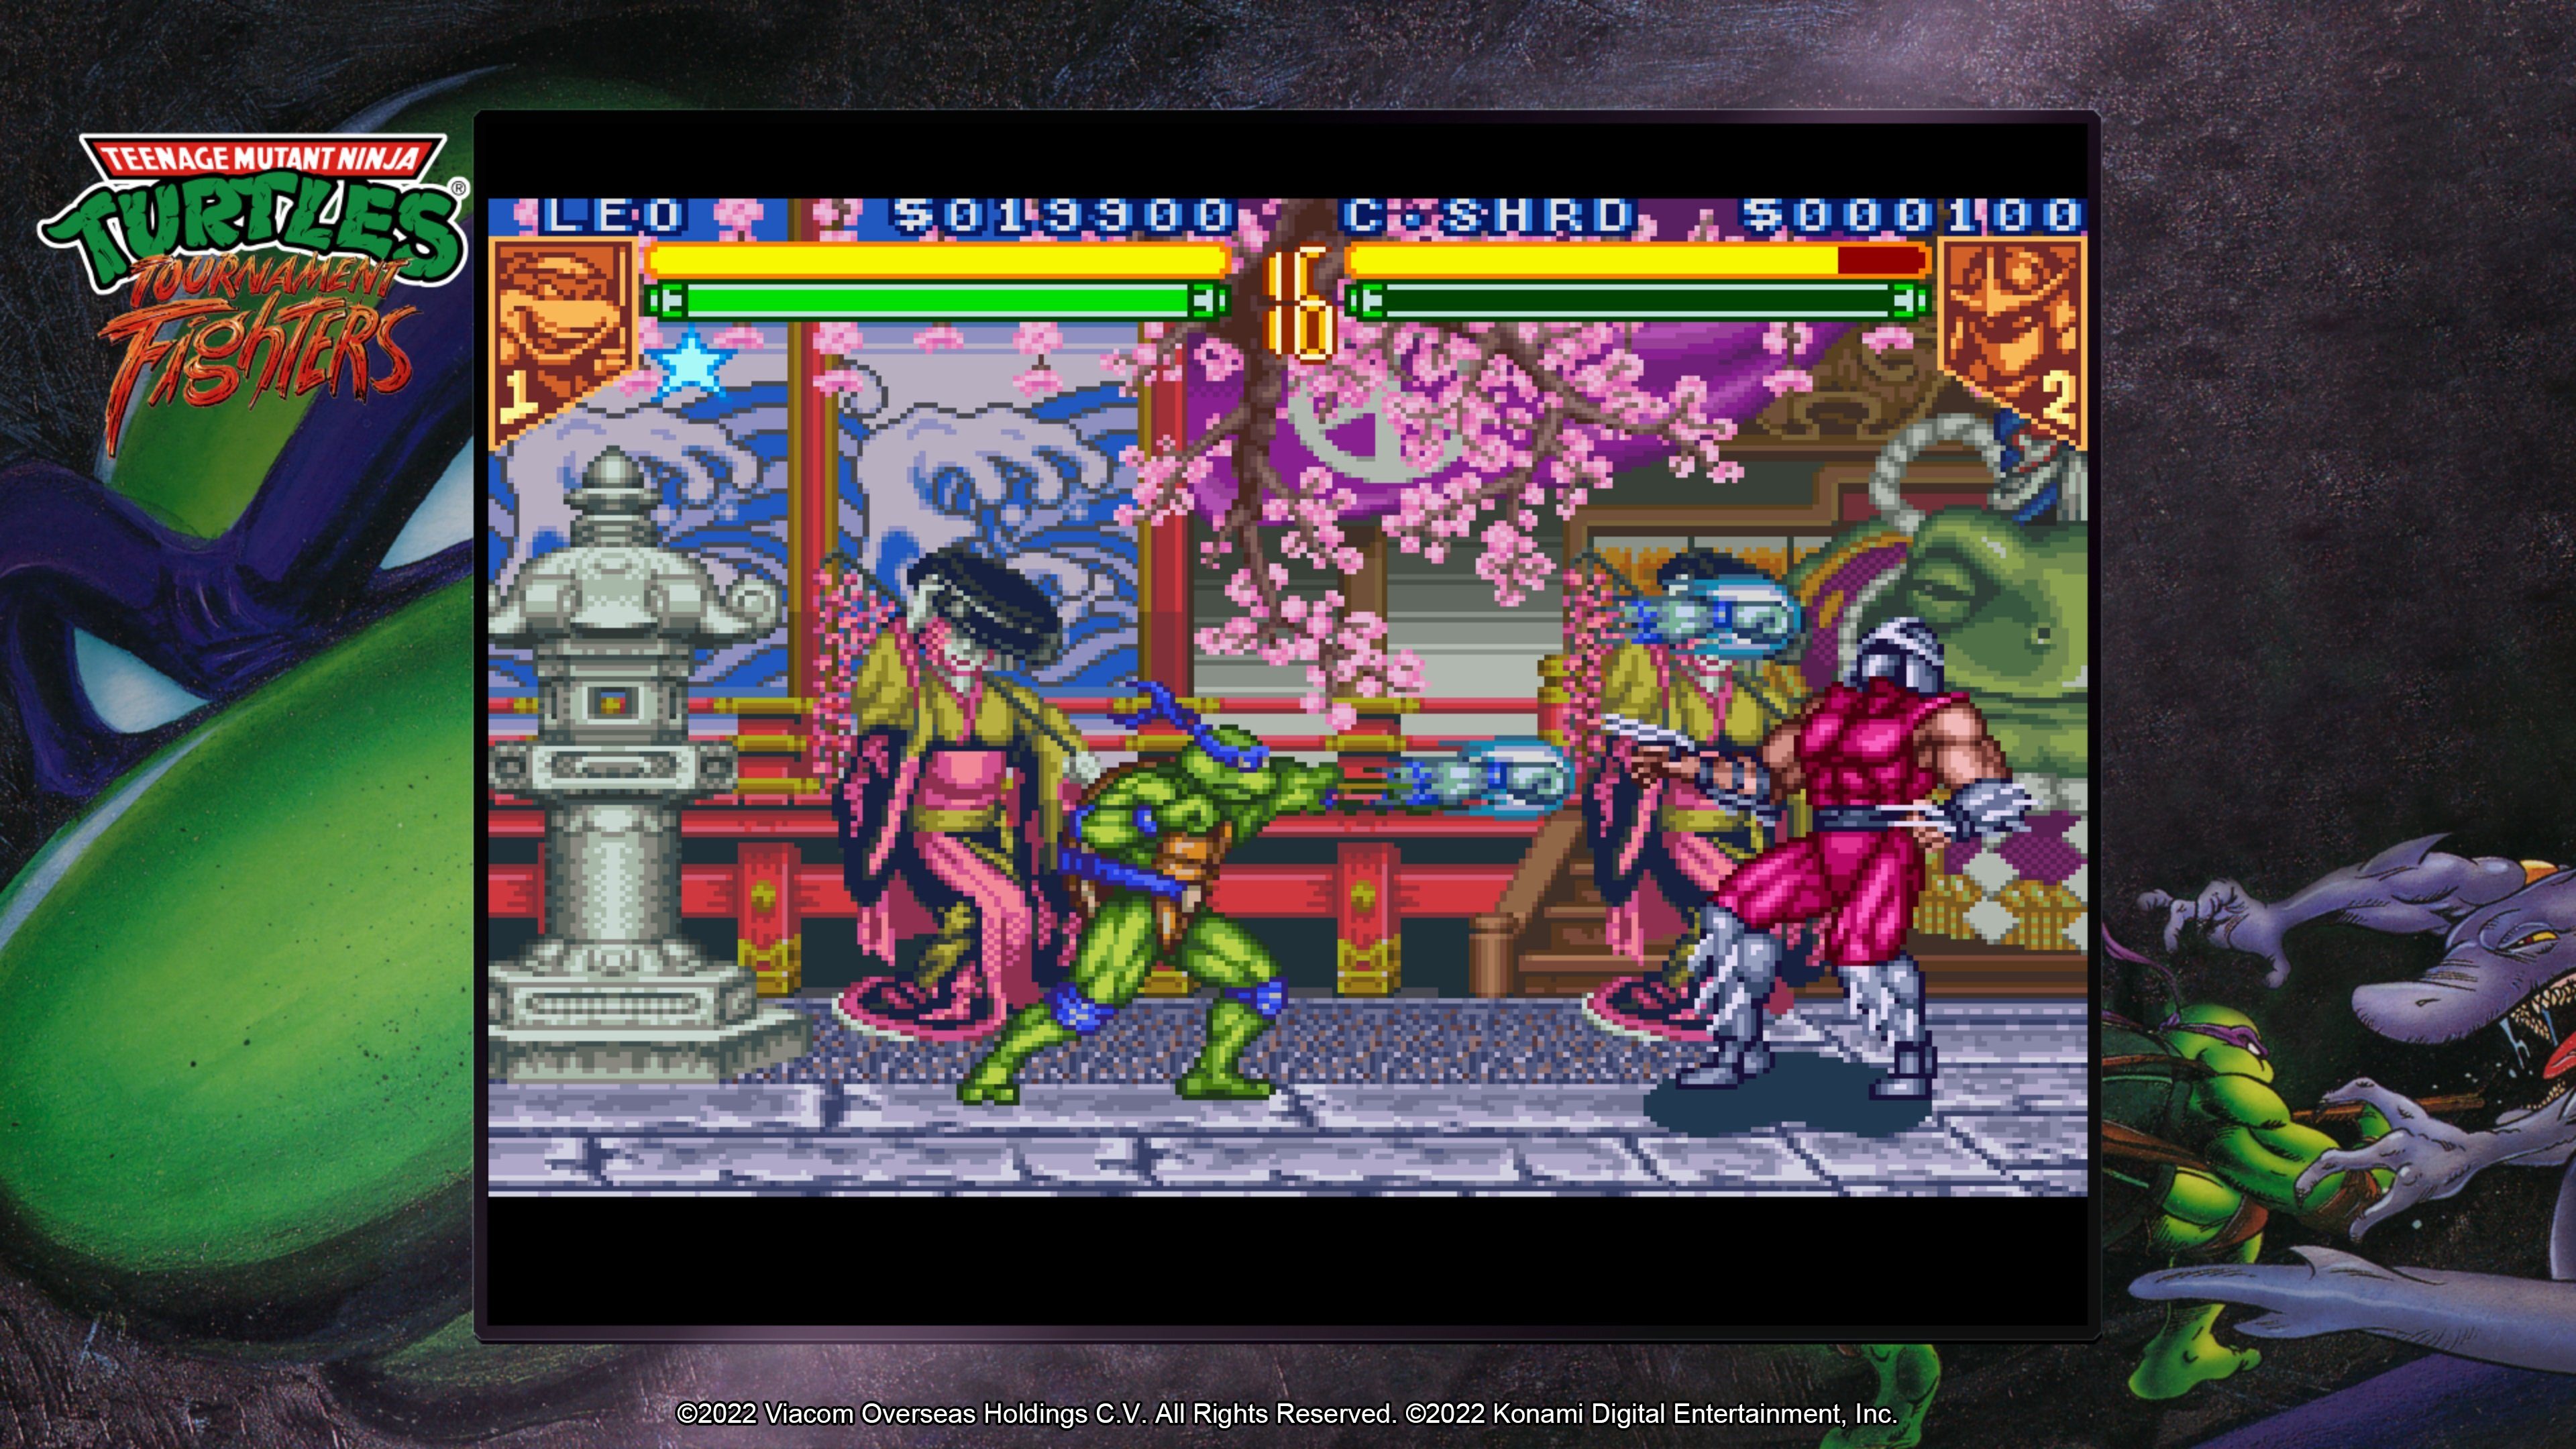 Konami Teenage Mutant Ninja Turtles - 5 The Collection PlayStation Cowabunga